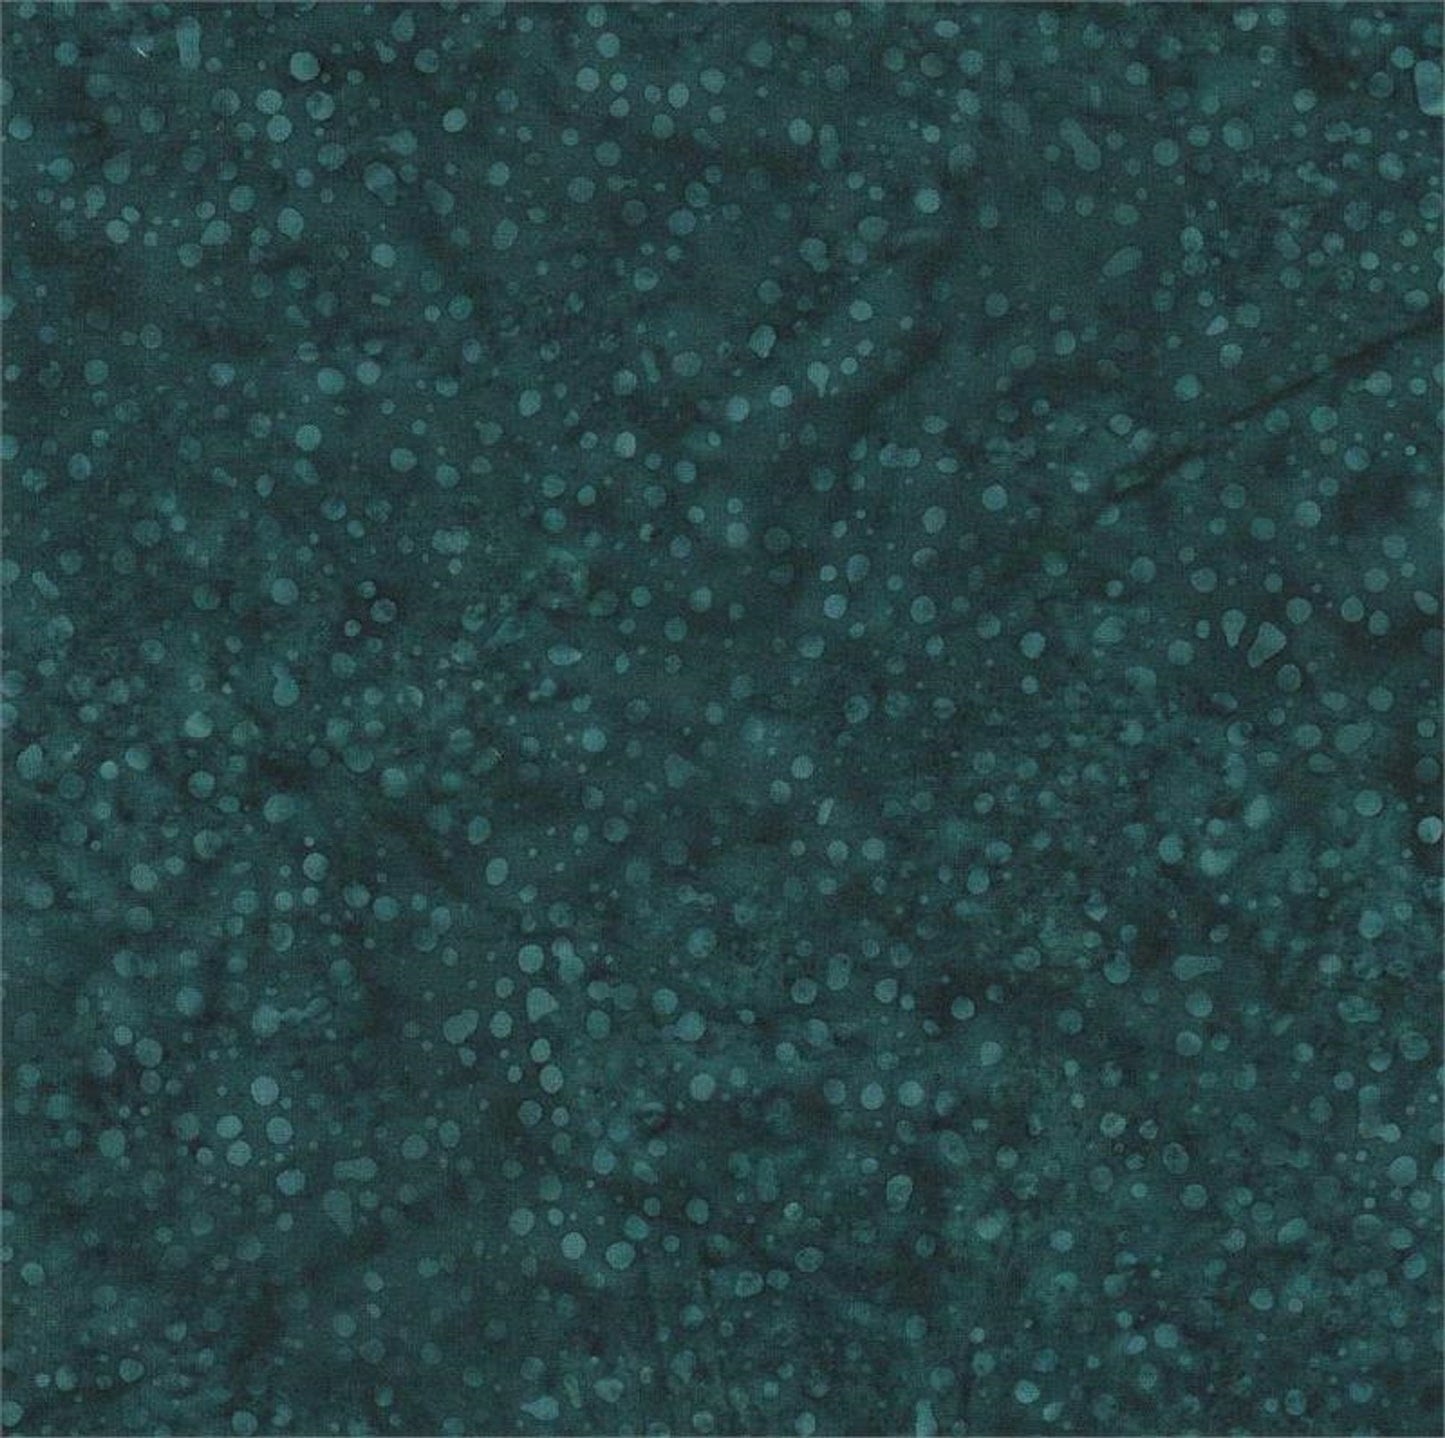 Teal Dots on Navy B/G-#5563-Batik Textiles-Fat Quarter